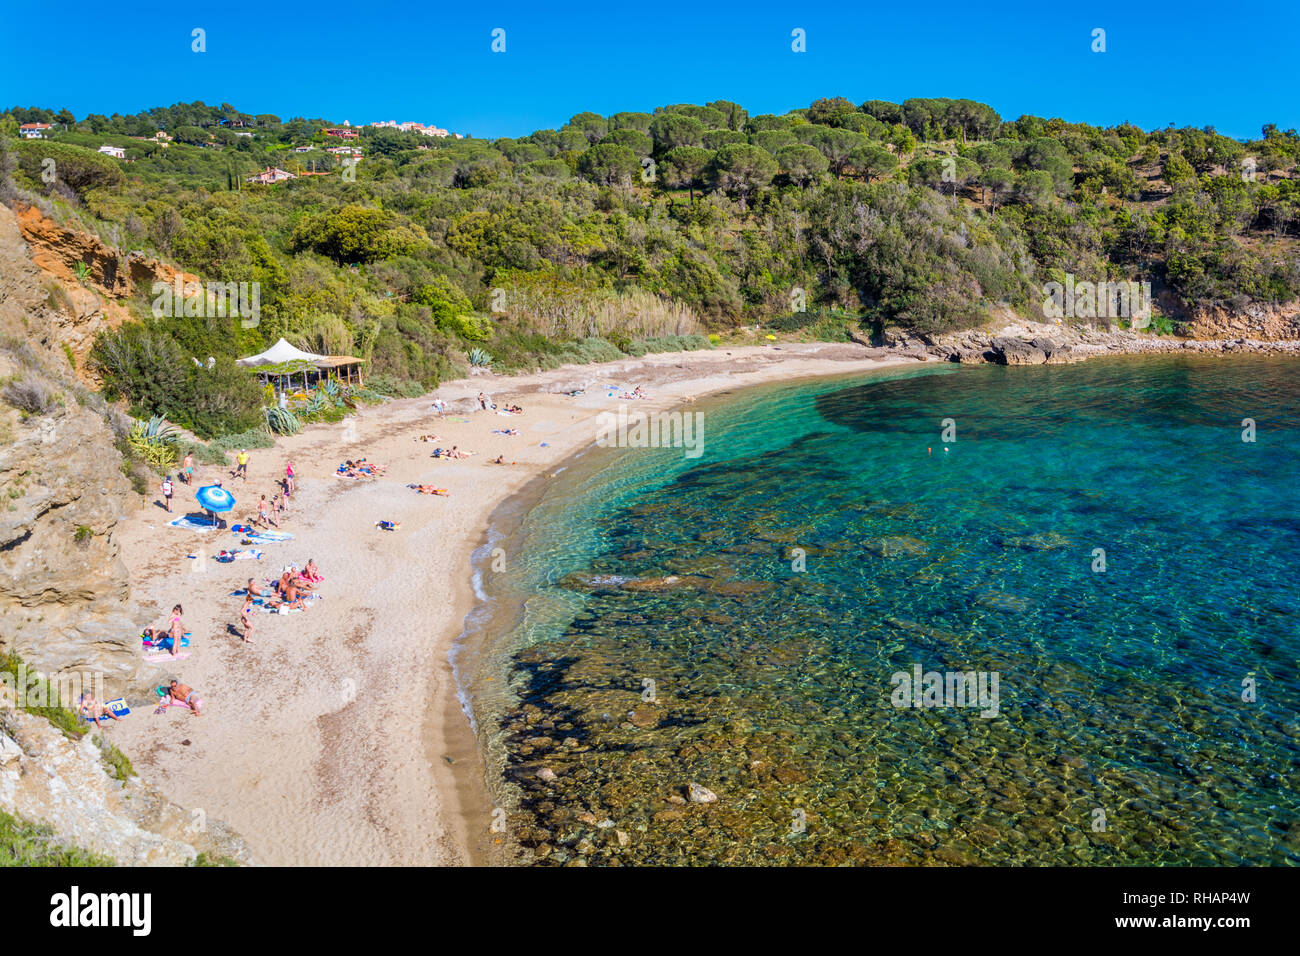 Barabarca beach near Capoliveri, Elba Island, Tuscany, Italy. Stock Photo